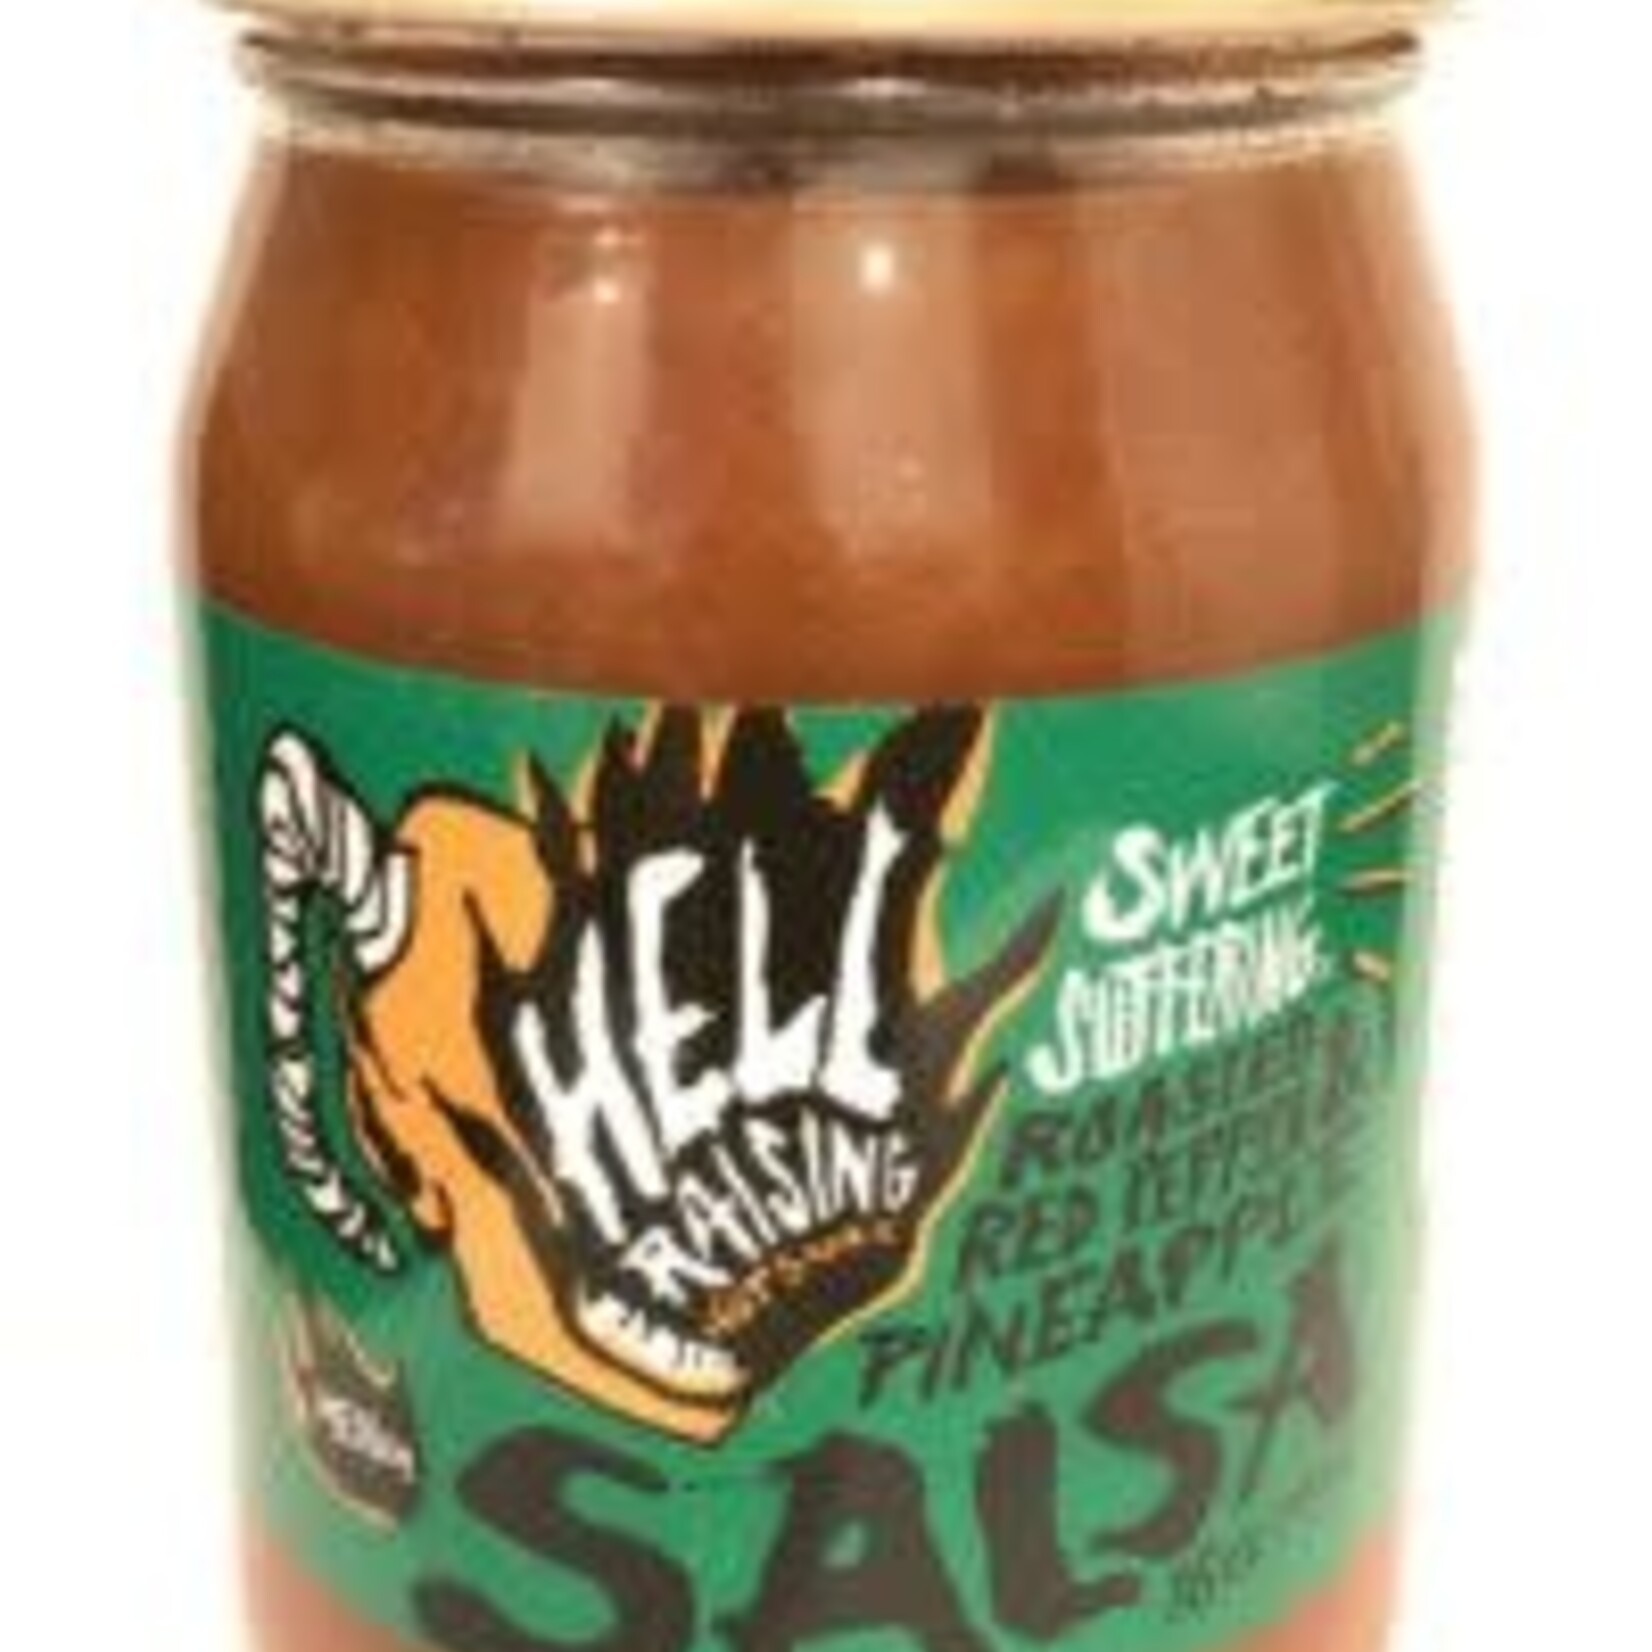 Hell Raising Hot Sauce Sweet Suffering Salsa